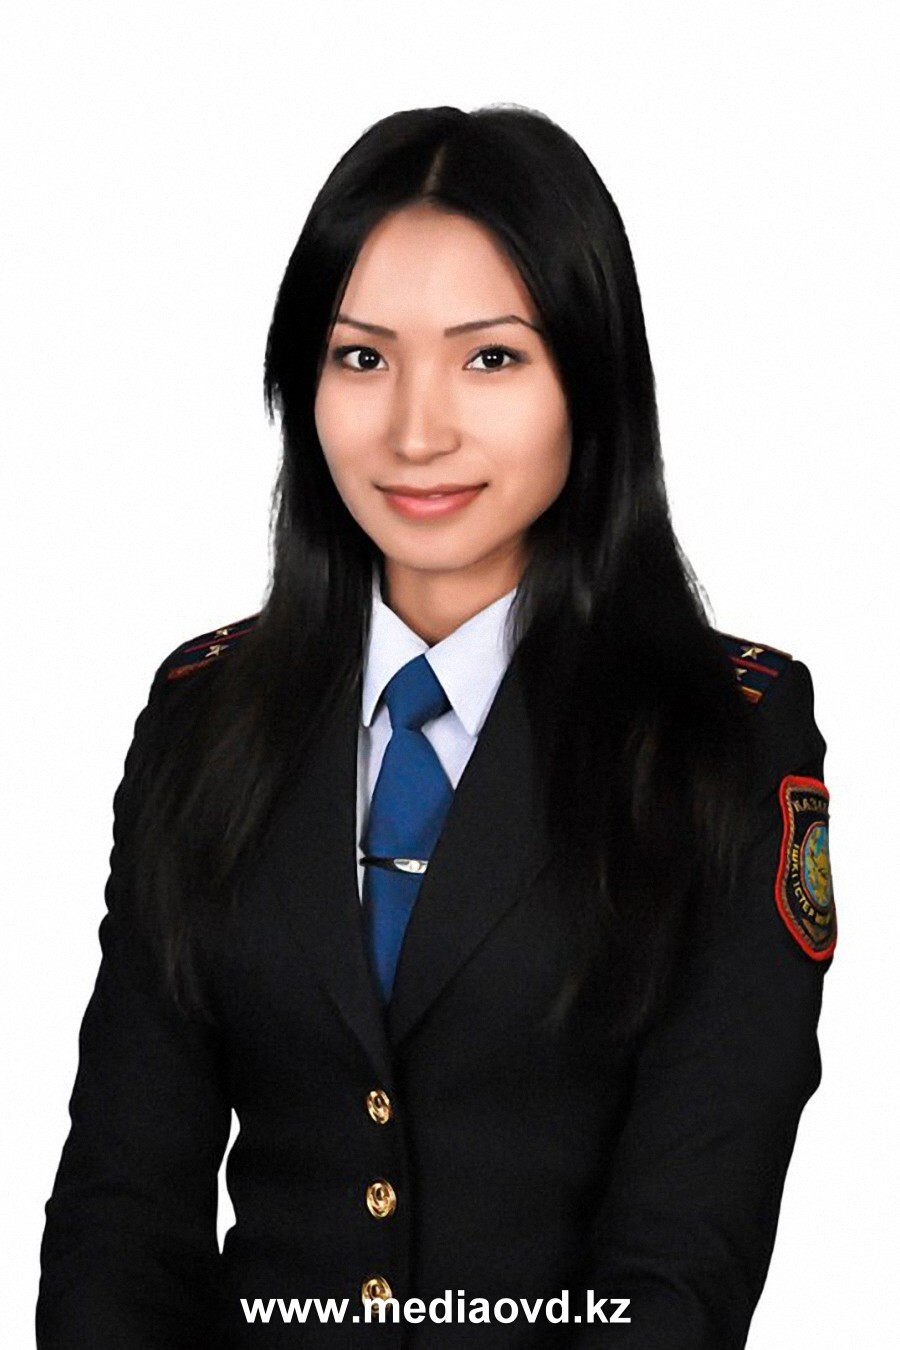 Женская форма лейтенанта. Казахстанские полицейские девушки. Лейтенант полиции Казахстана. Форма полиции Казахстана женская. Девушки полицейские в Казахстане.